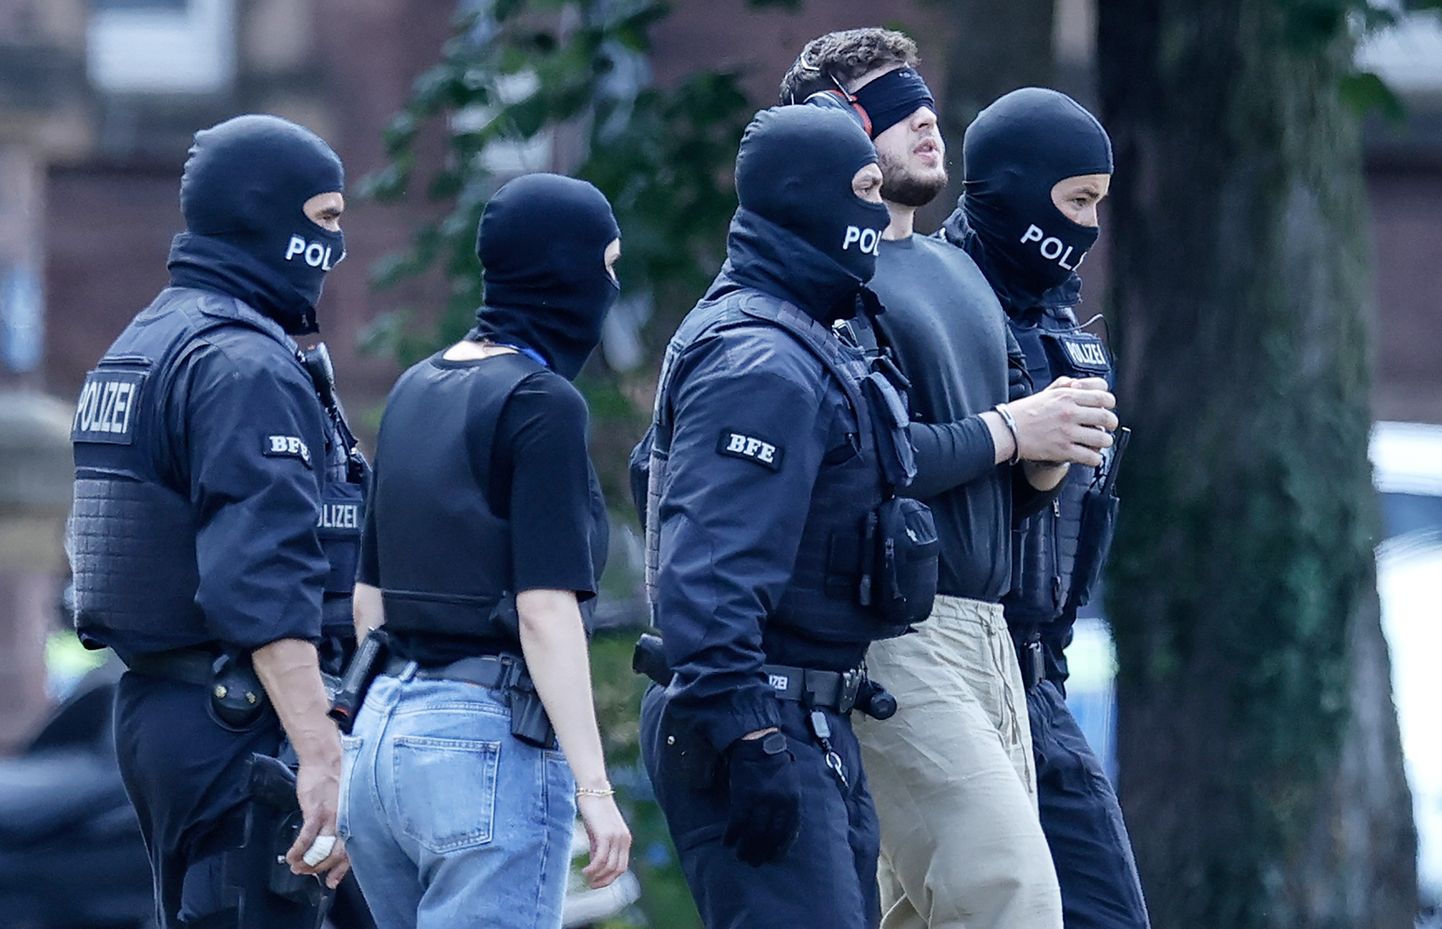 Федеральная прокуратура Германии арестовала семь подозреваемых членов исламистской террористической организации.